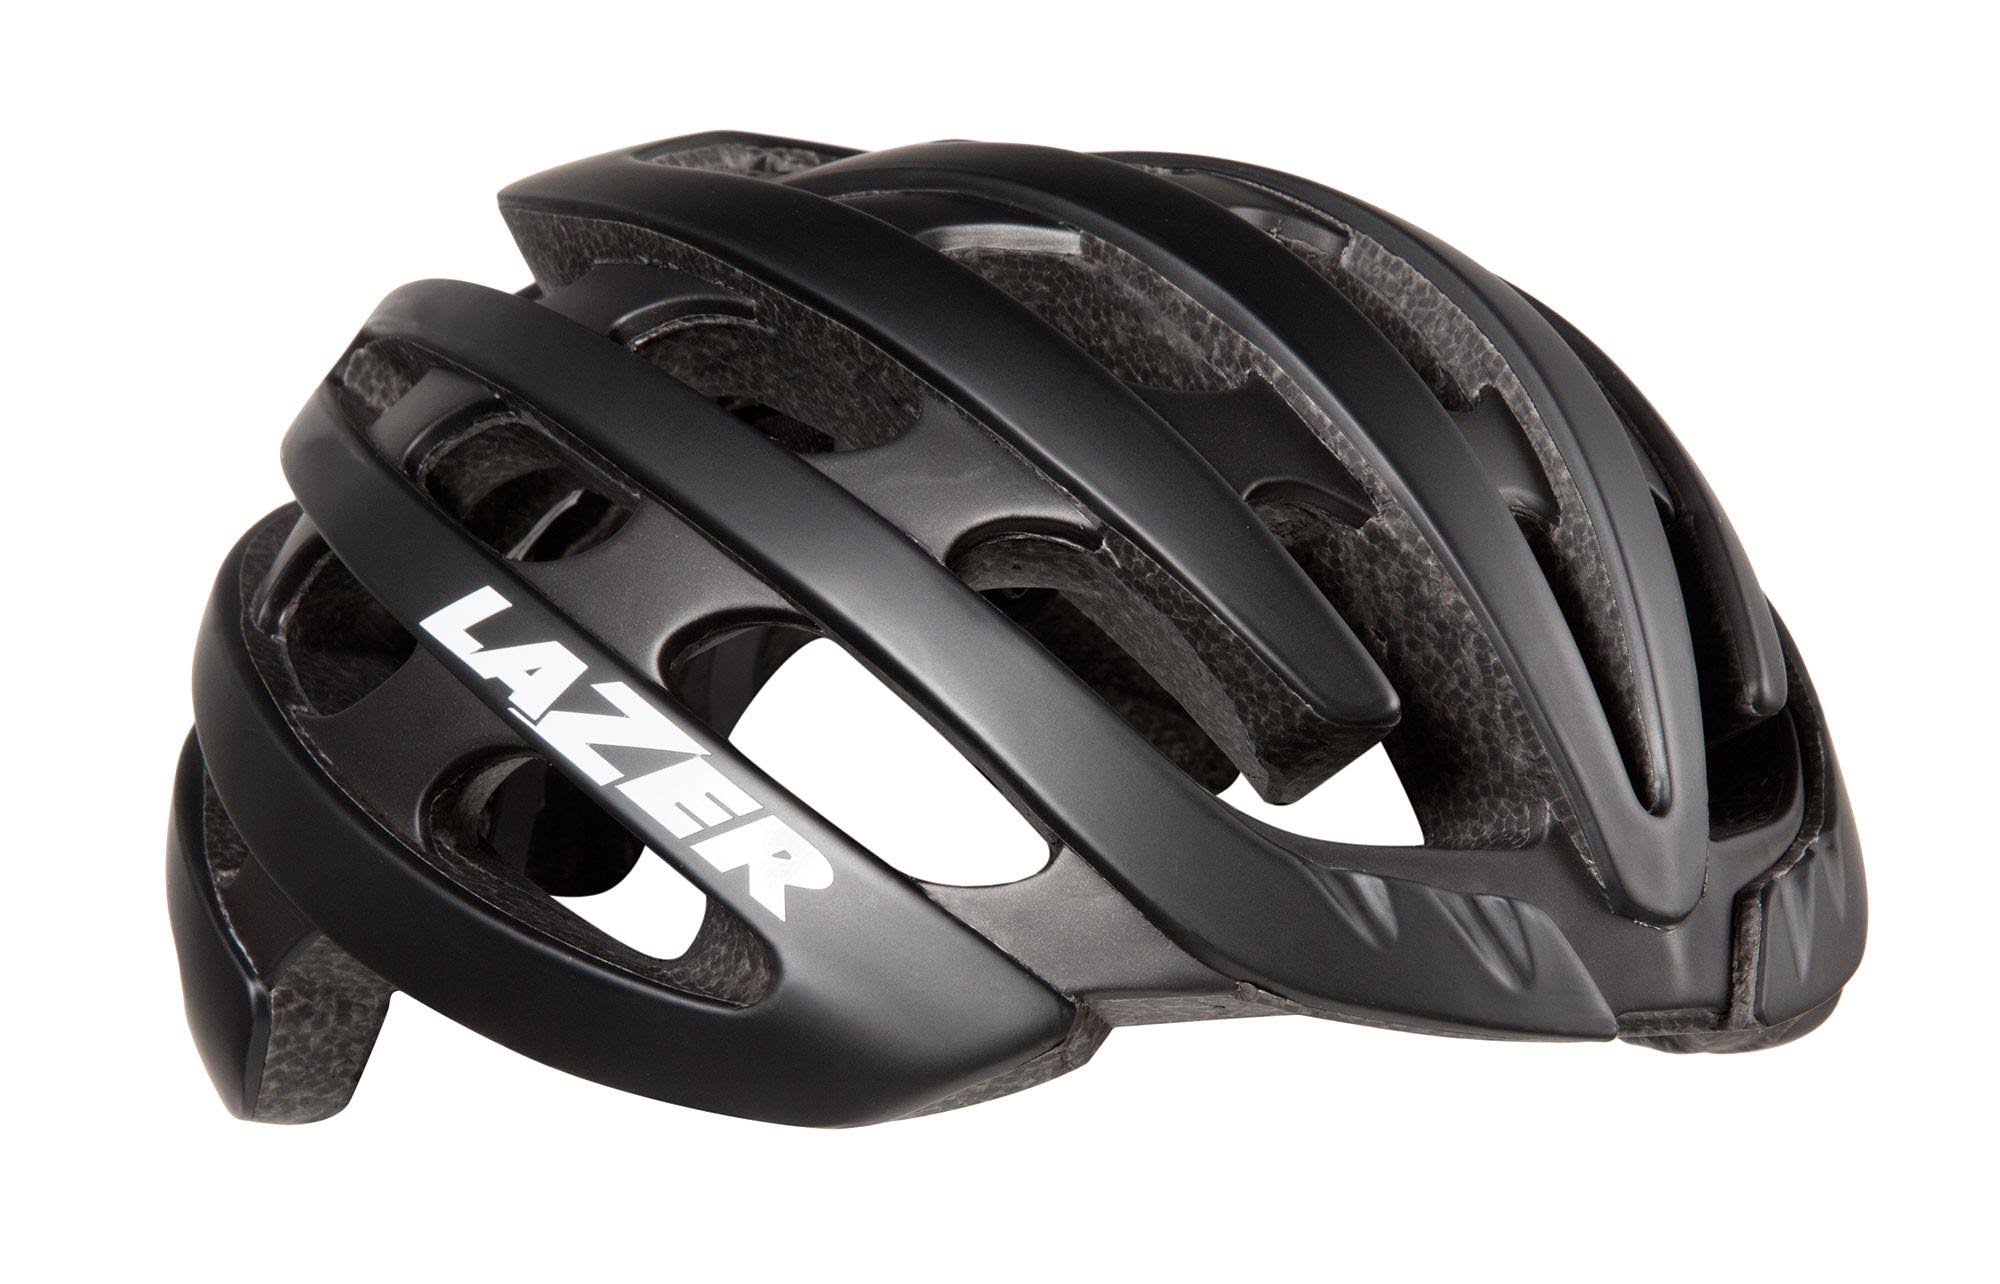 Lazer Men's Z1 Mips Cycling Helmet - Matte Black, Large